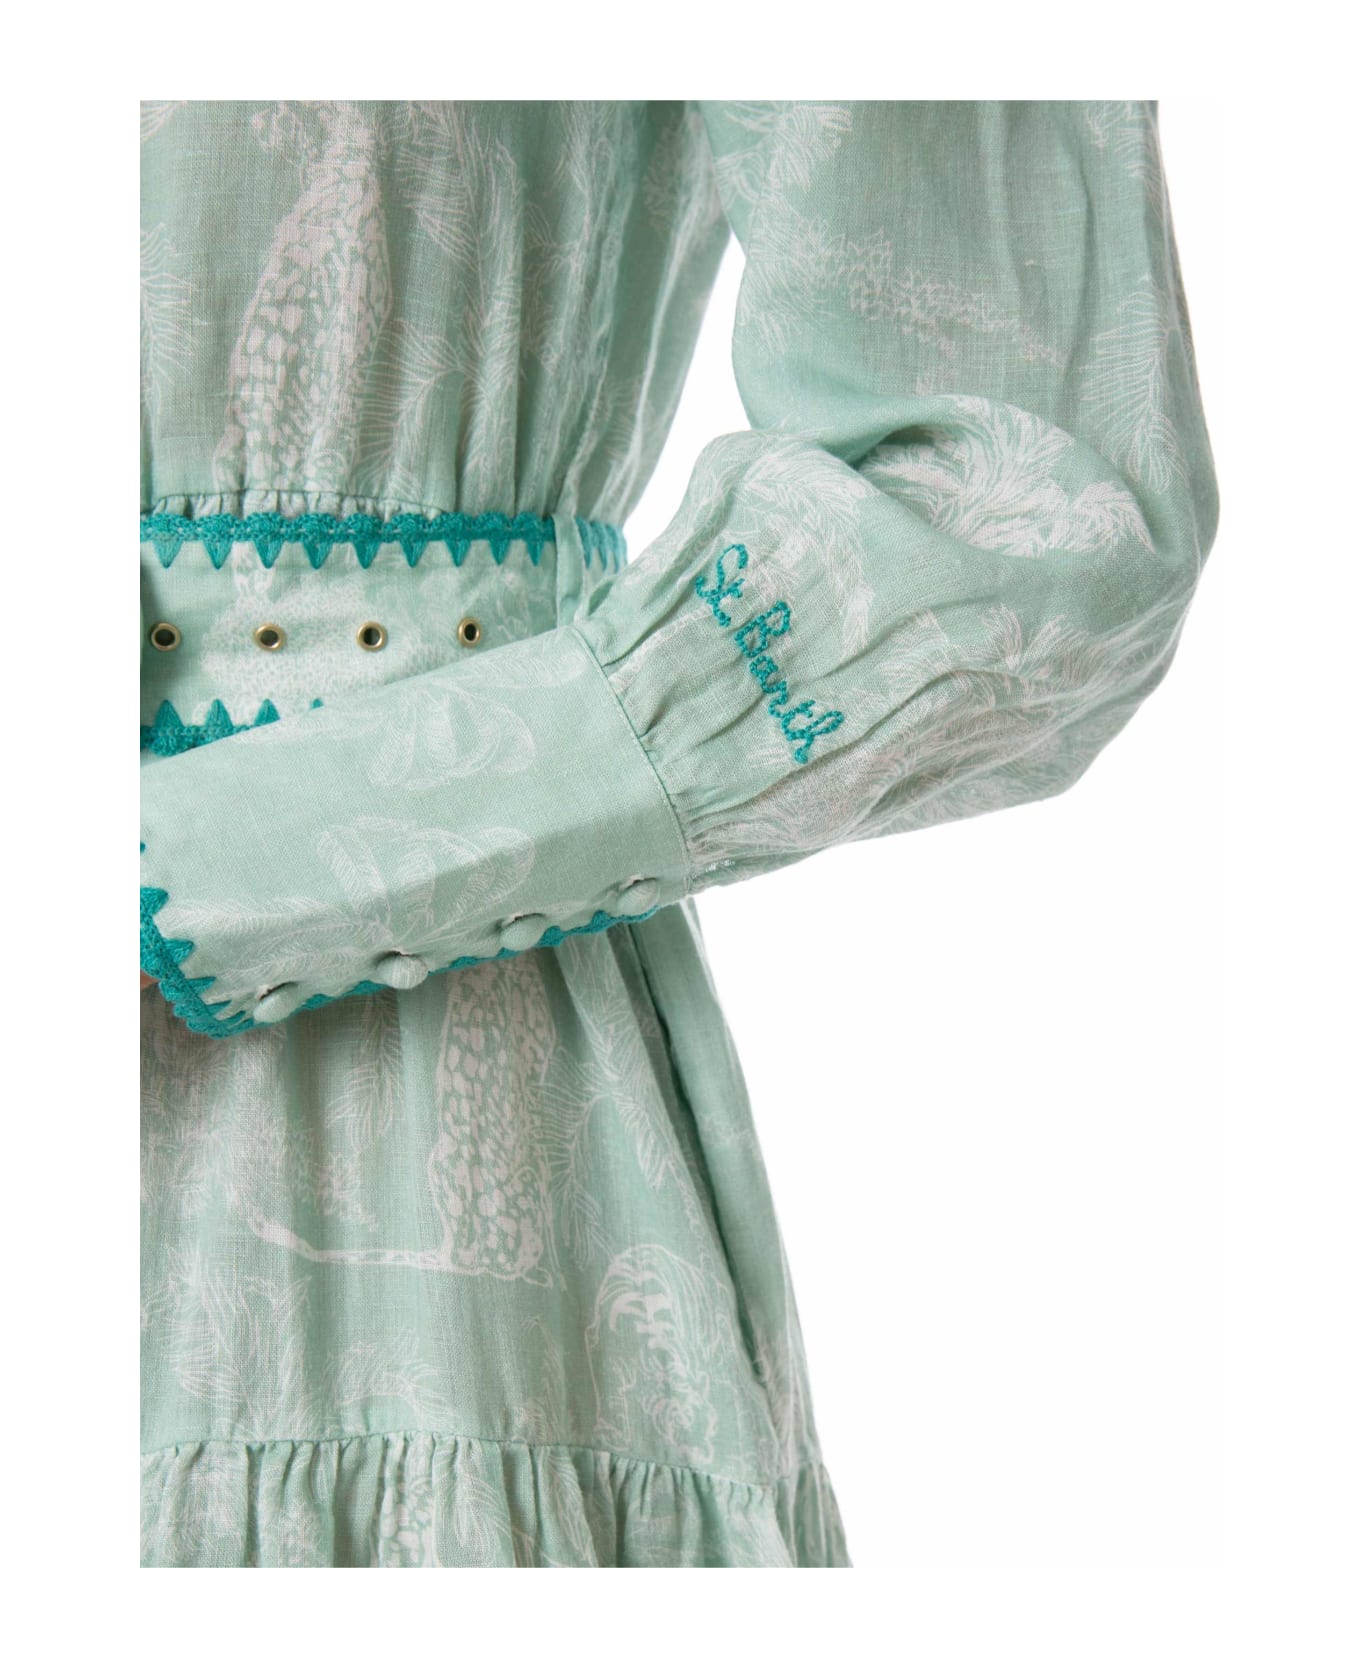 MC2 Saint Barth Woman Linen Long Dress - GREEN